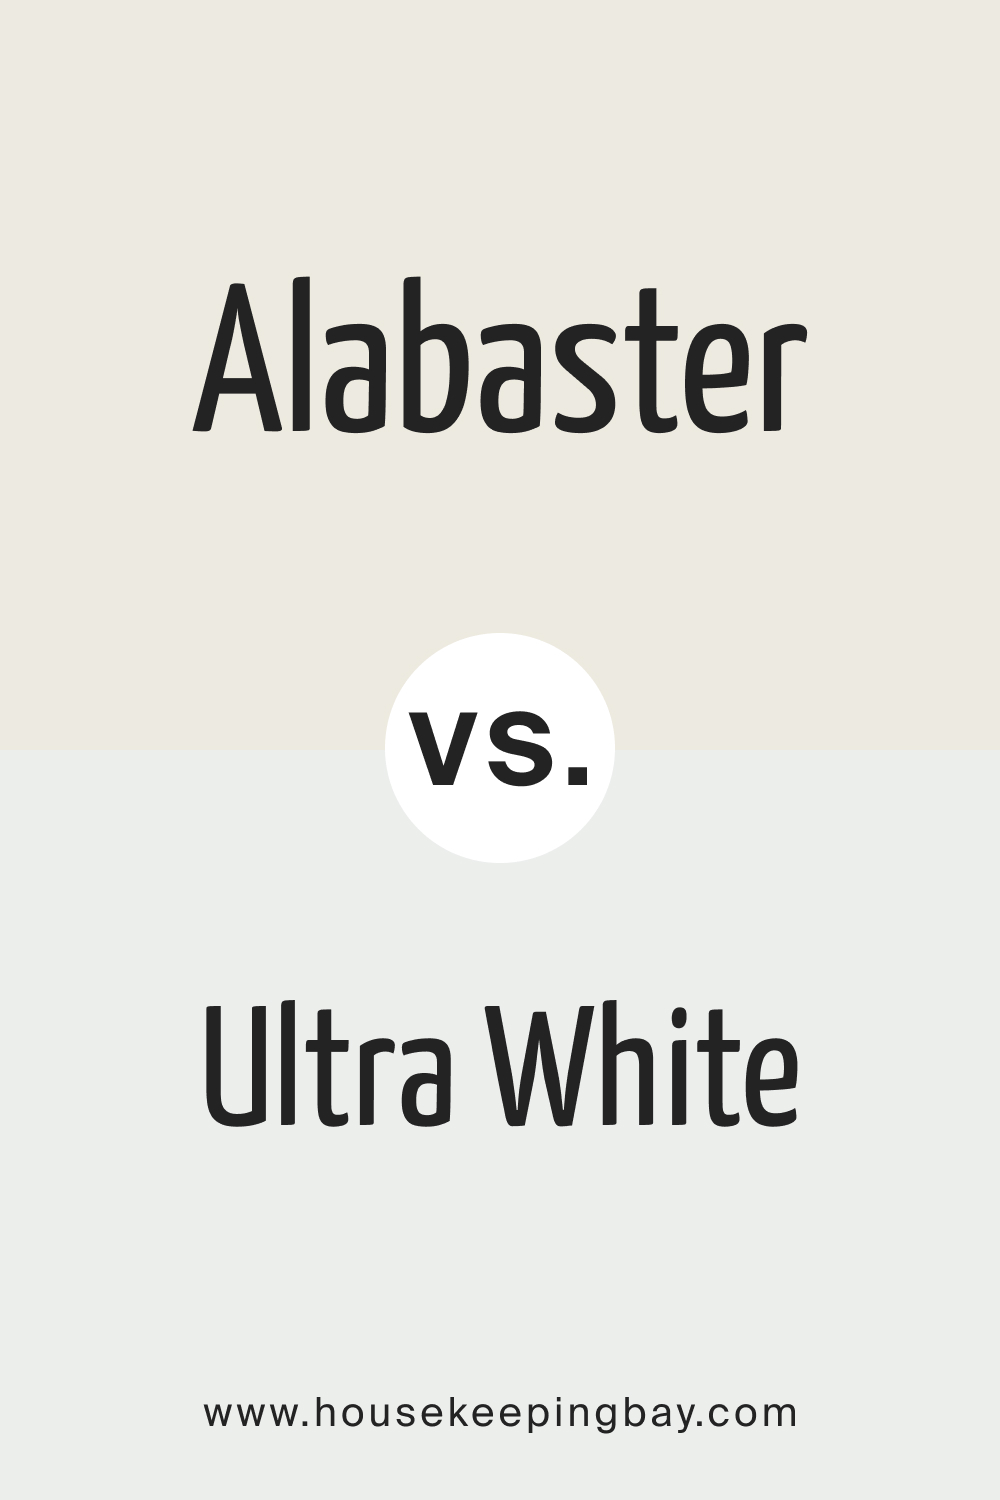 Alabaster vs. Ultra White